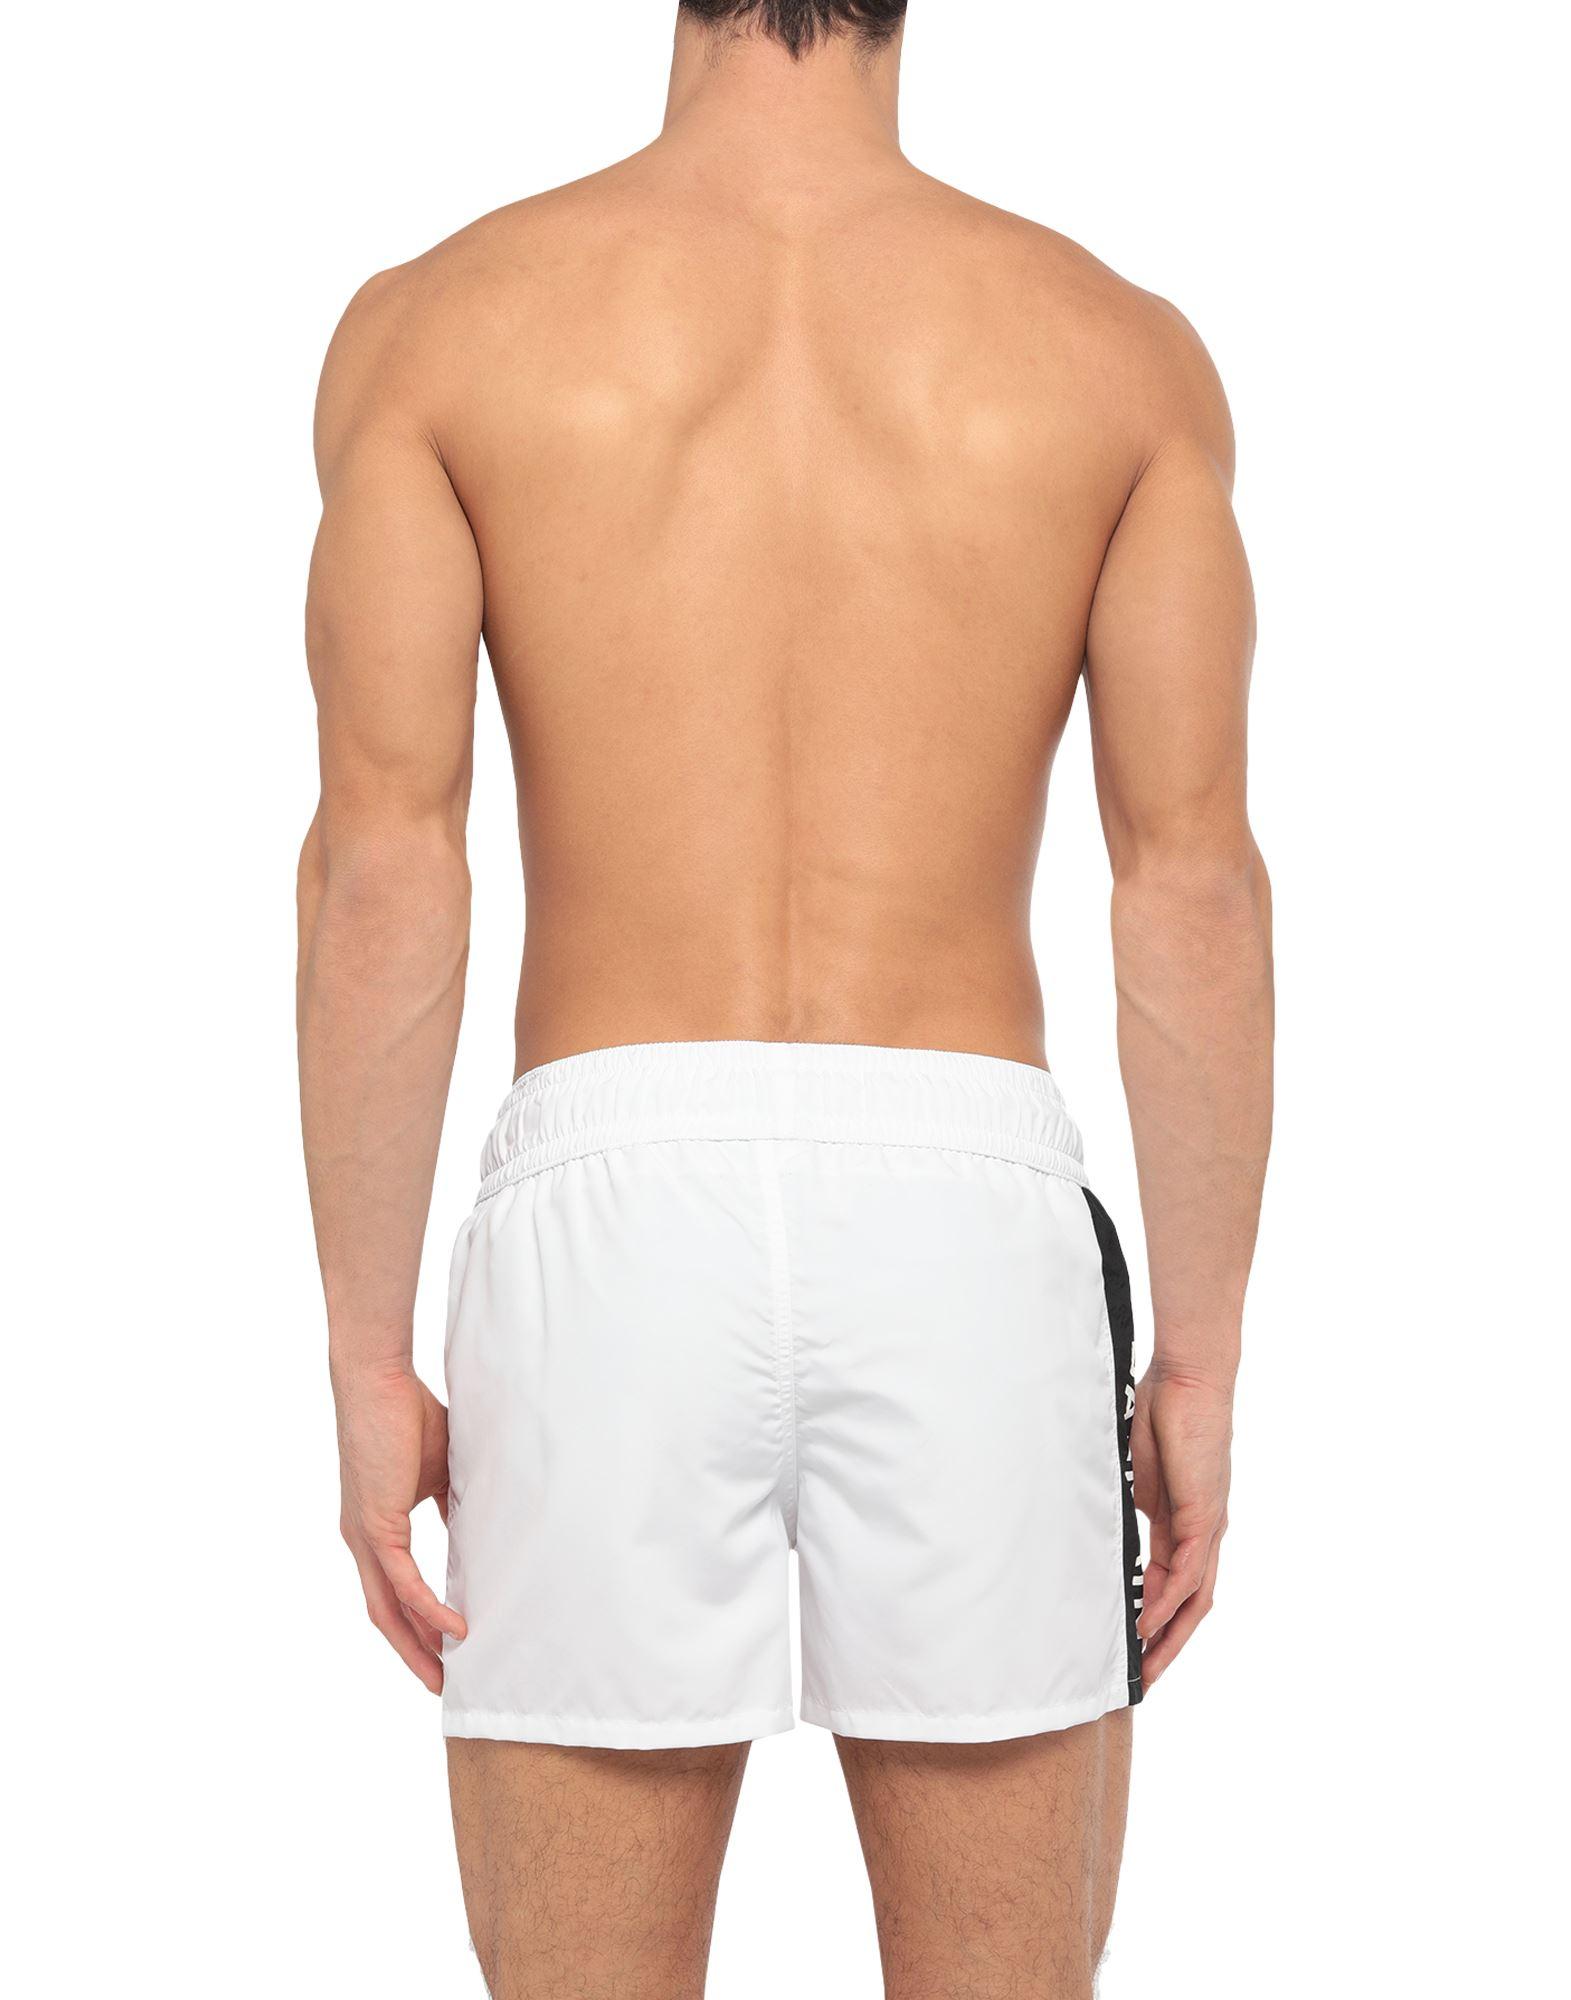 Balmain Synthetic Swim Trunks in White for Men - Lyst